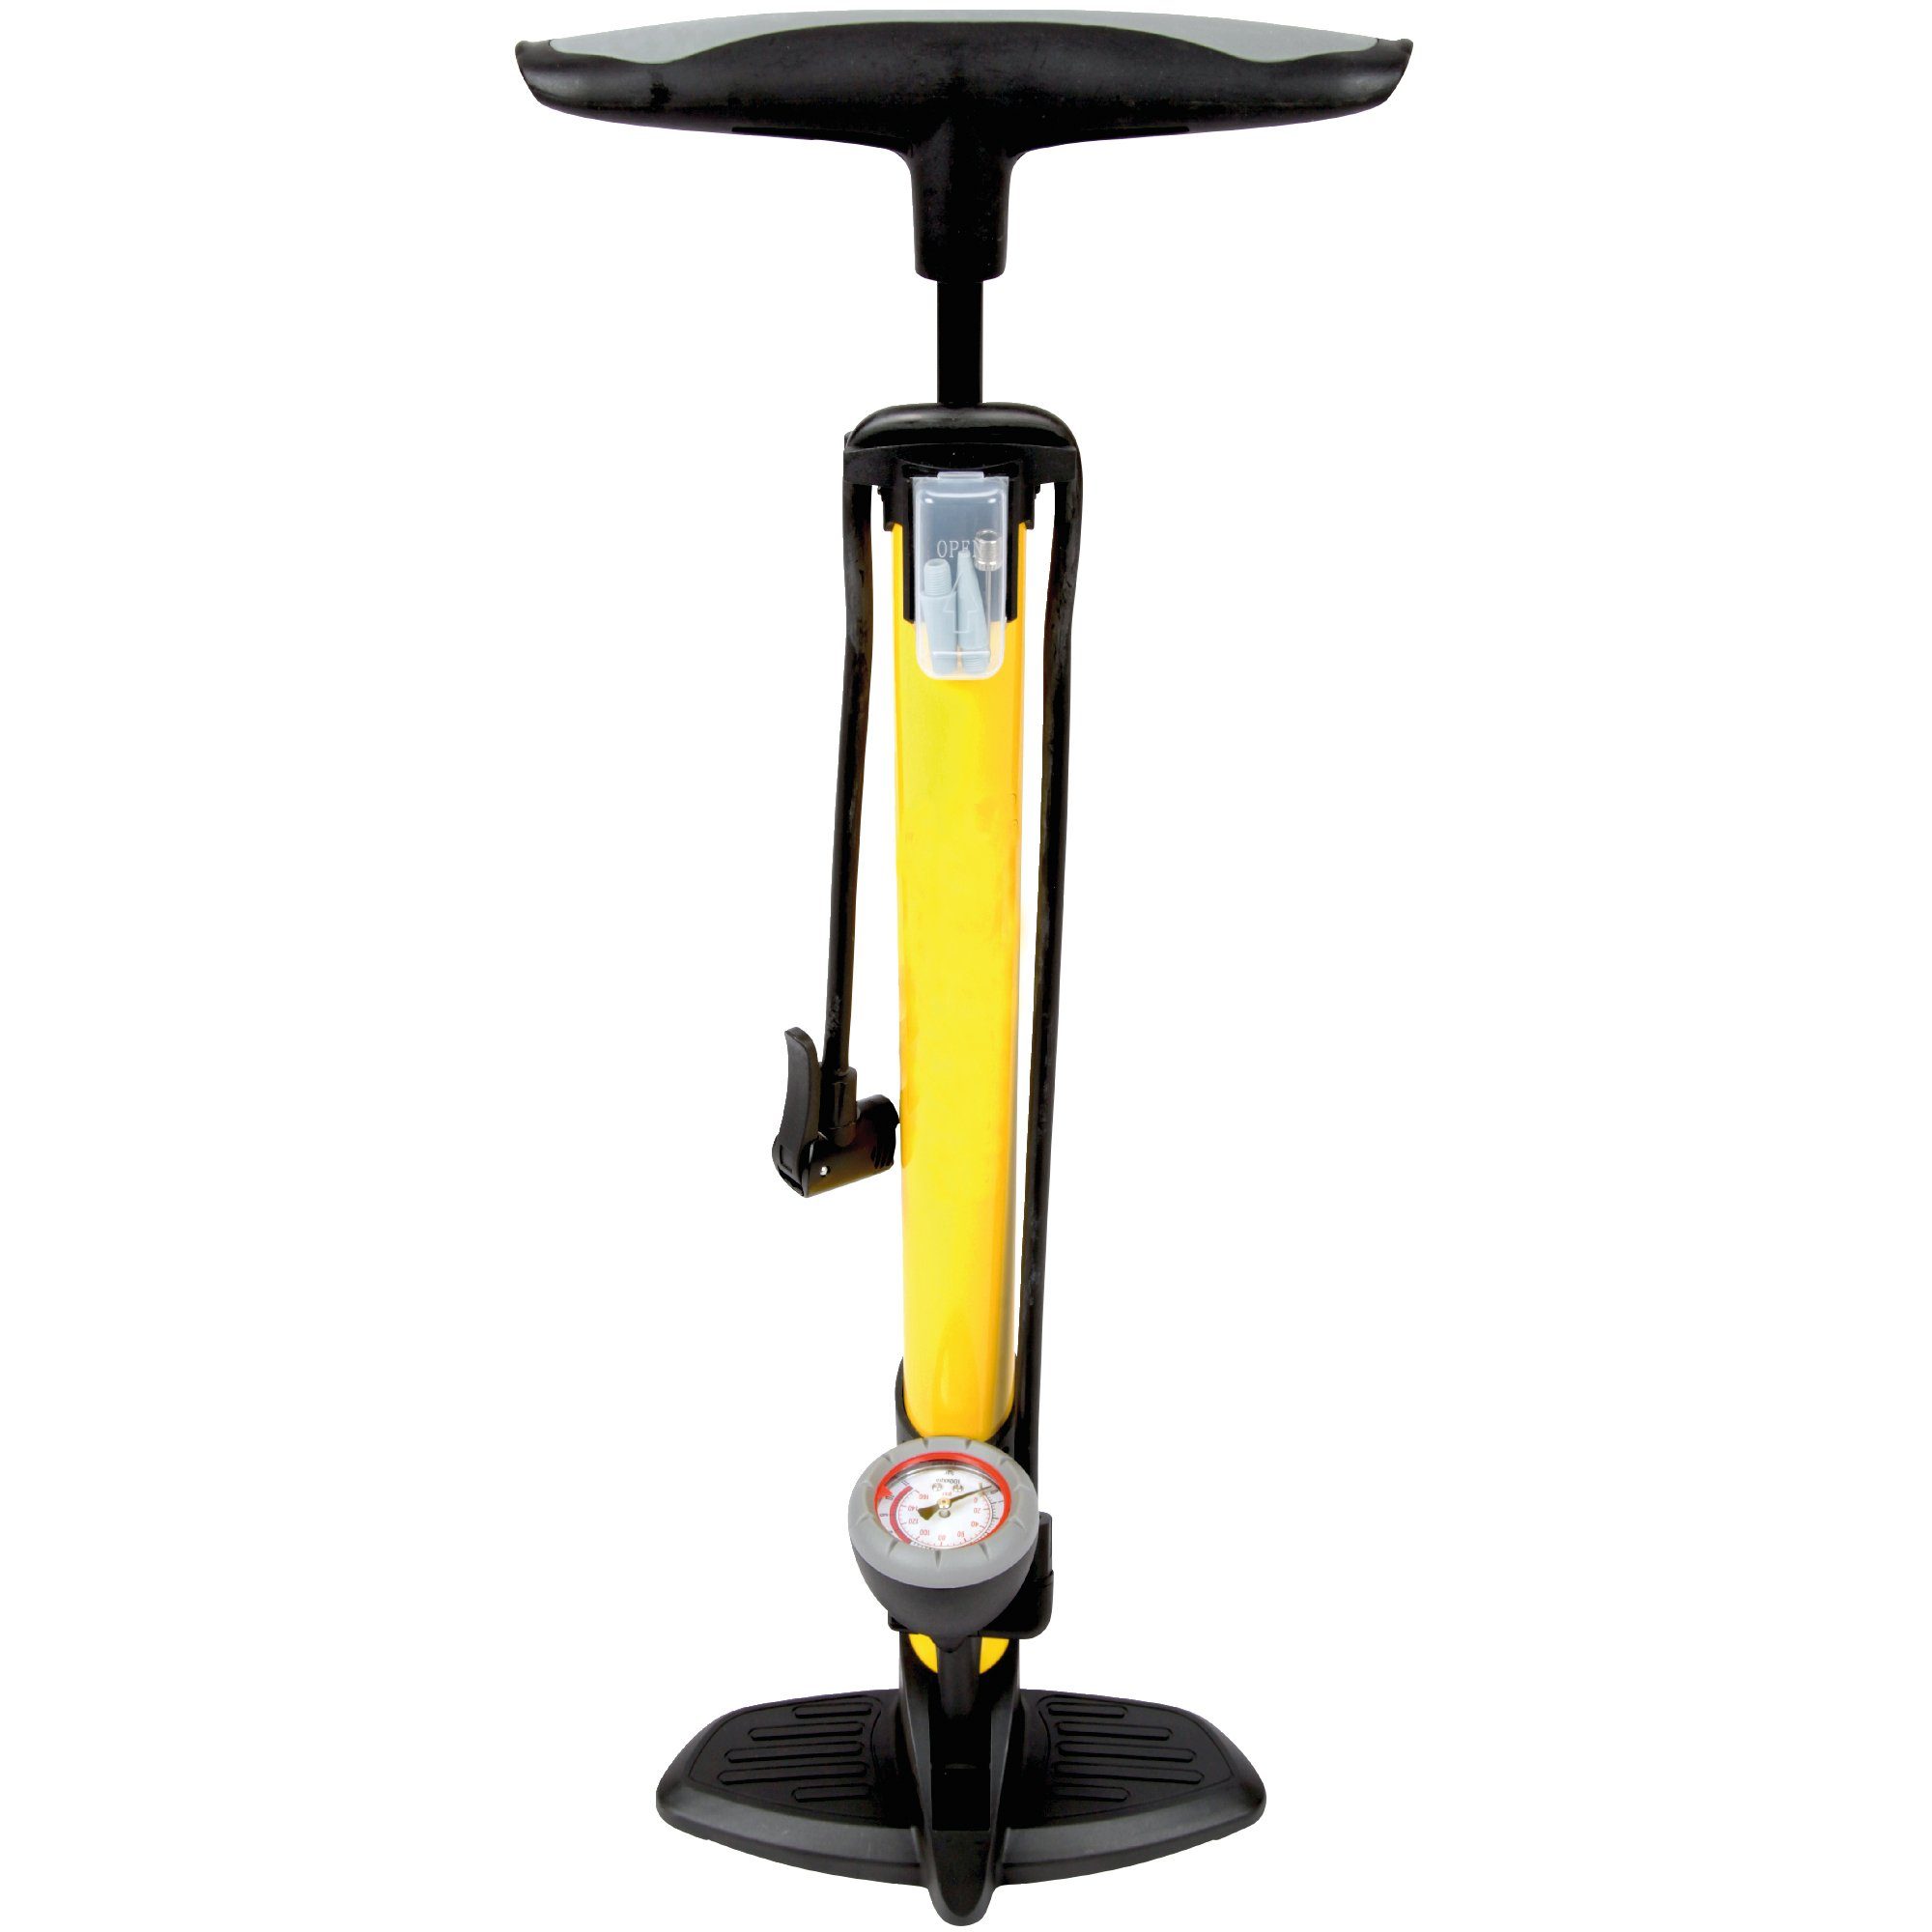 Fahrradpumpe,Fahrradpumpe Luftpumpe Fahrrad für alle Ventile,Hochdruck  Fahrrad Standpumpe mit Manometer 11 Bar/160 PSI,Luftpumpe Französisches  Ventil